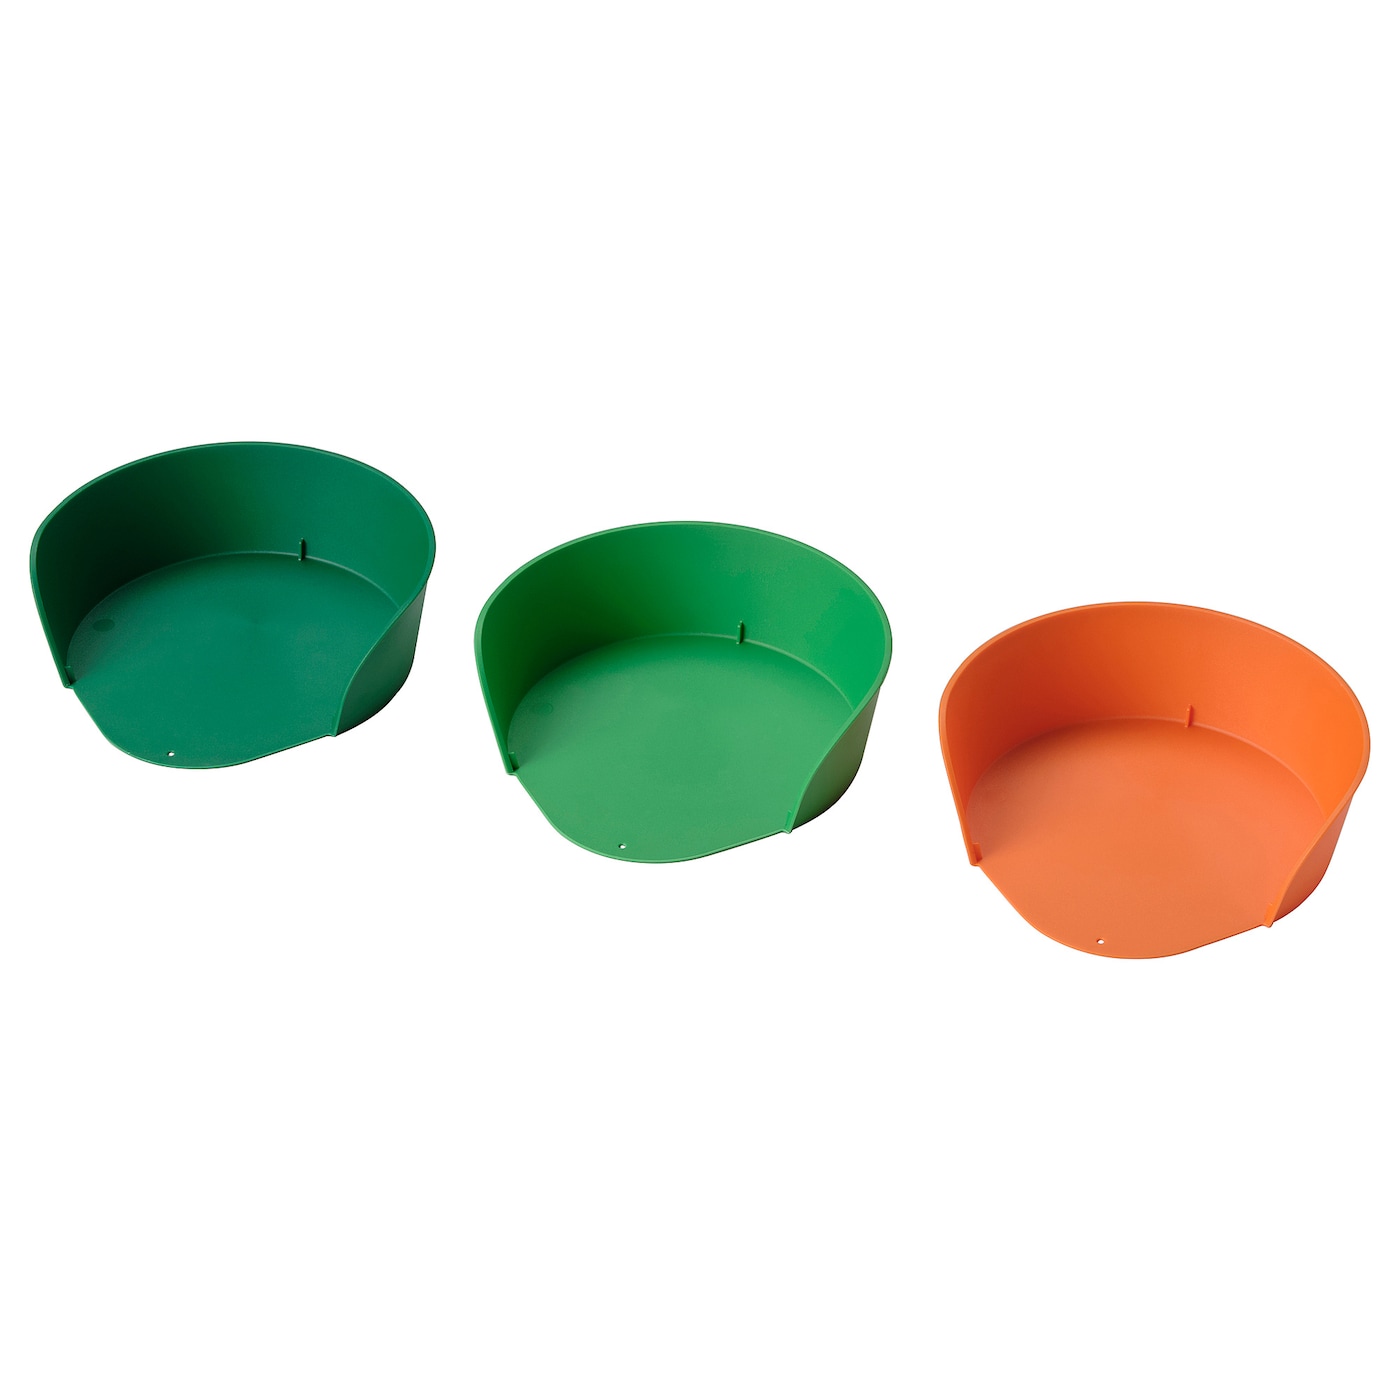 Чаша - IKEA UPPFYLLD, зеленый/оранжевый, УППФИЛЛД ИКЕА